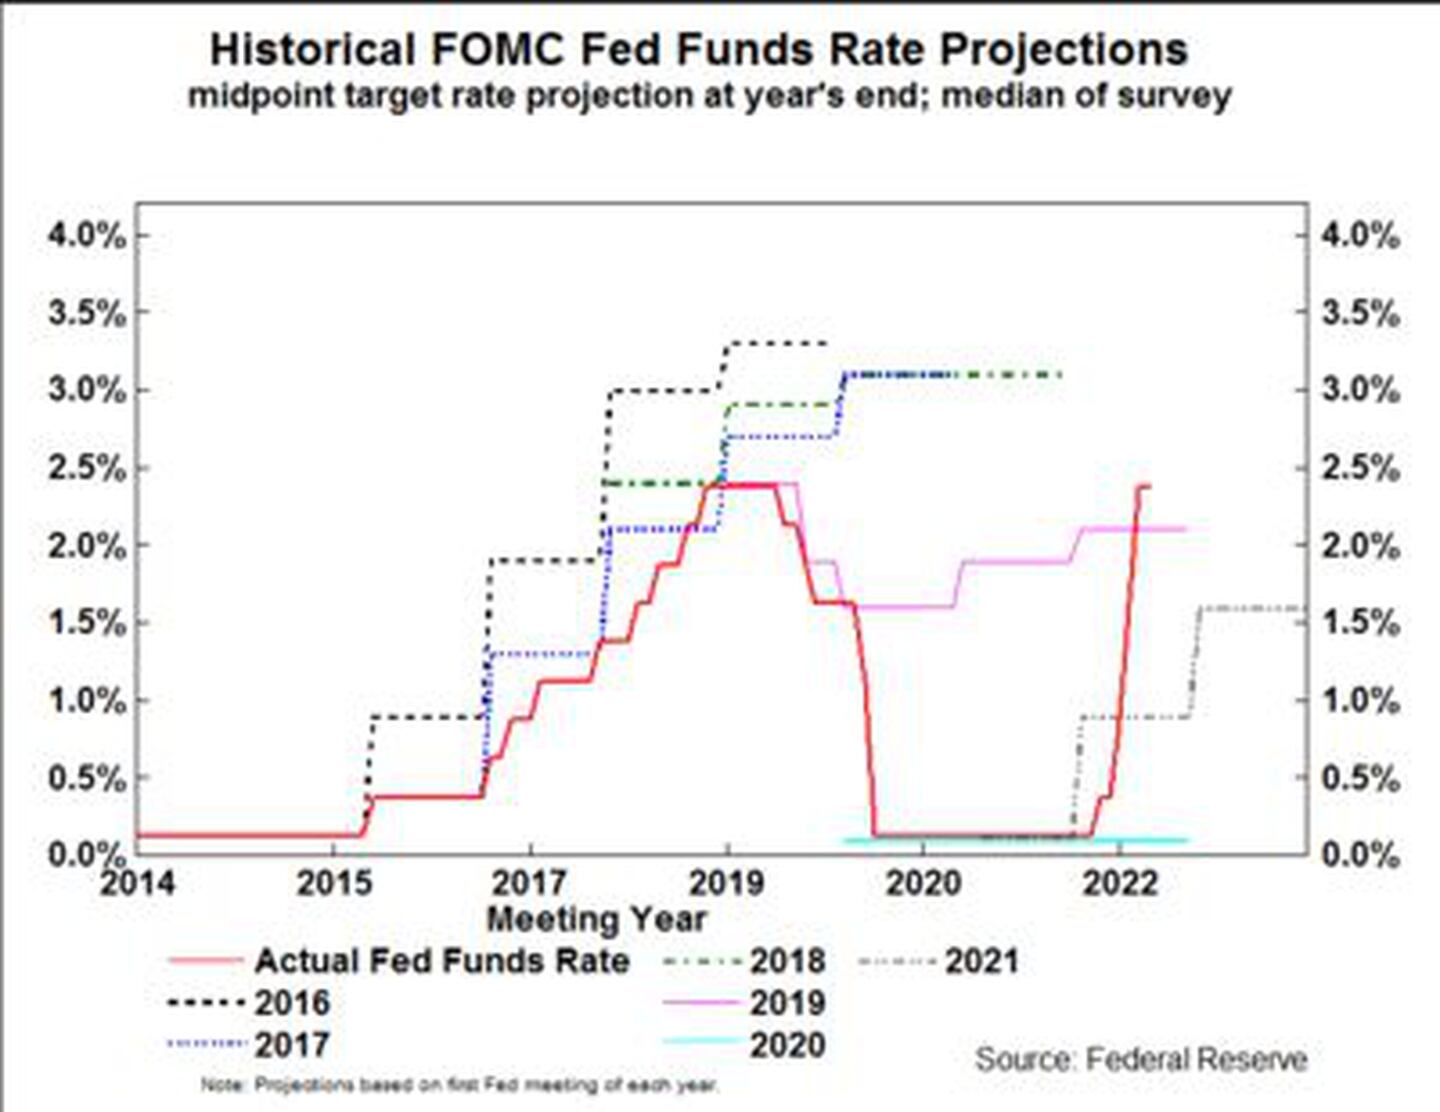 Proyecciones de la tasa de fondos federales de la Feddfd